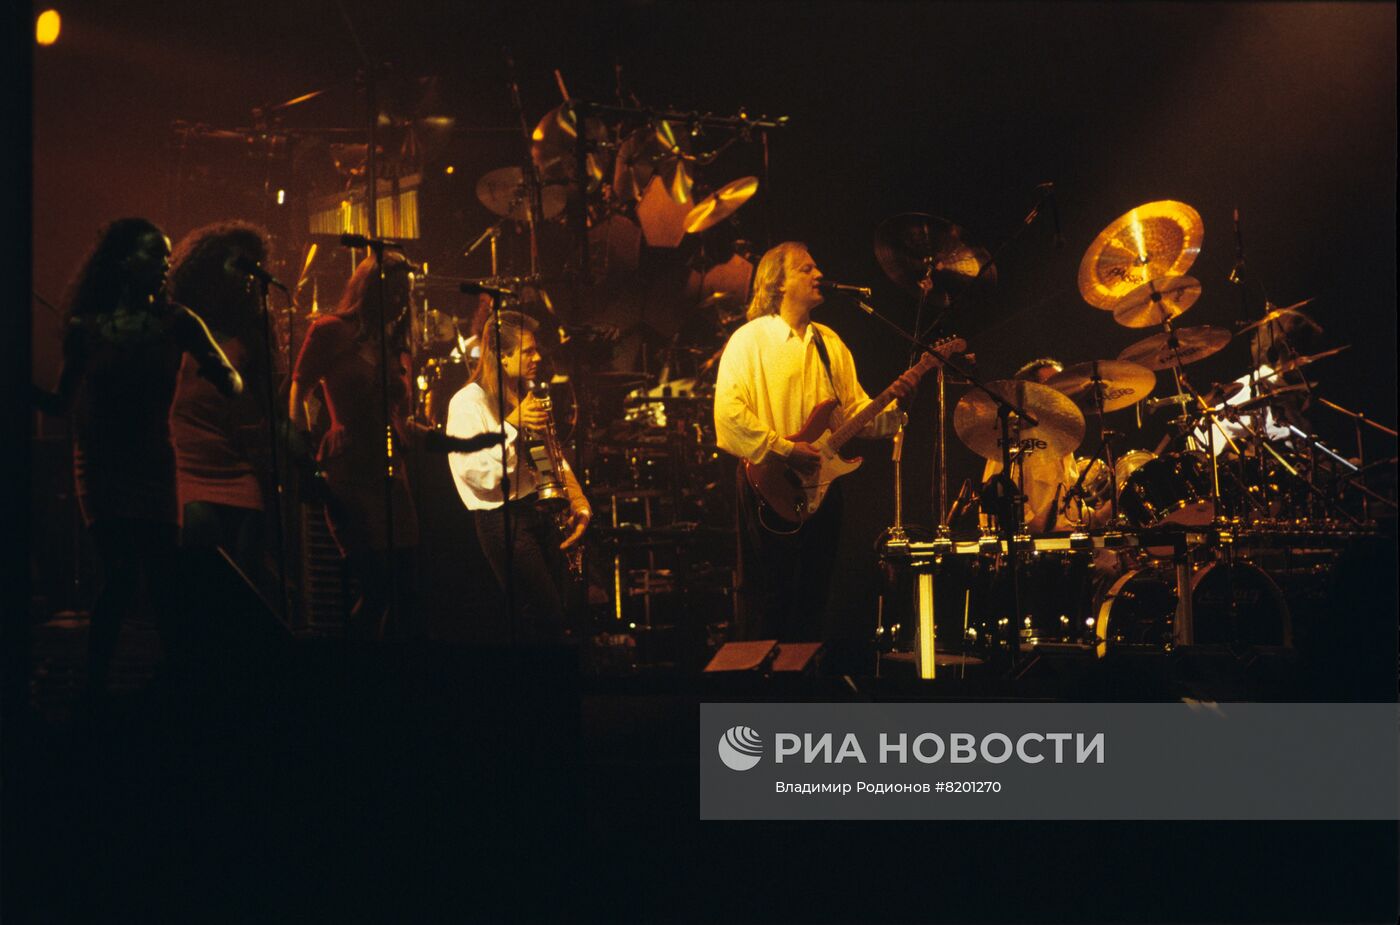 Гастроли британской рок-группы Pink Floyd ("Пинк Флойд") в СССР